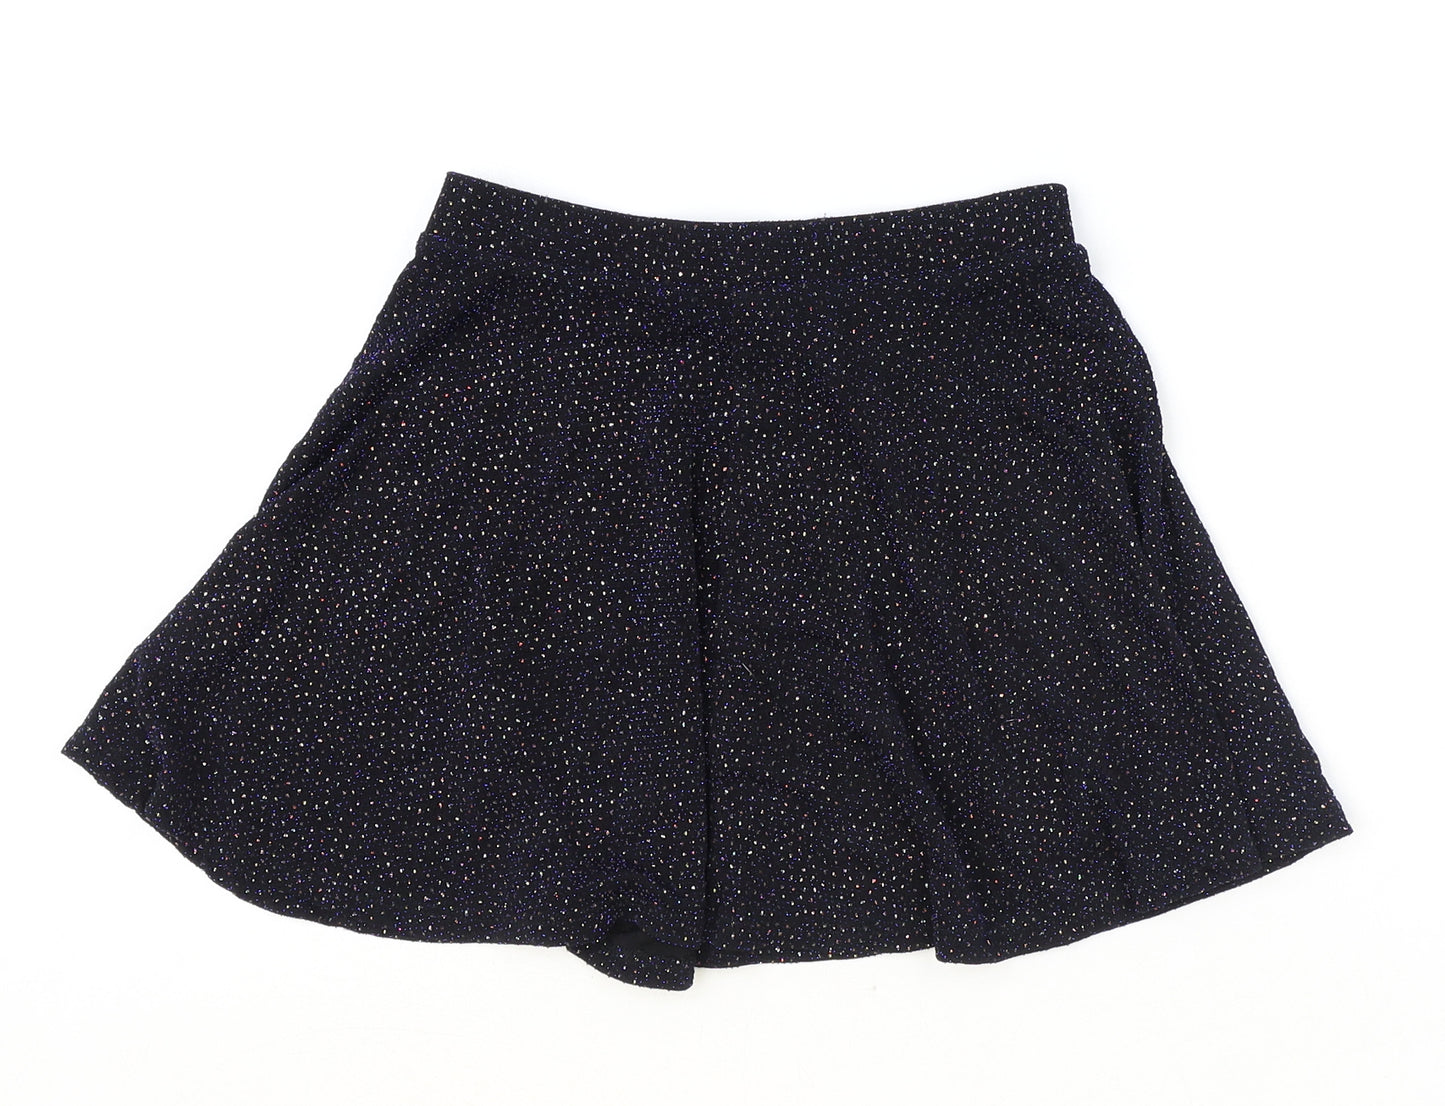 Primark Girls Black Geometric Nylon Skater Skirt Size 7-8 Years Regular Pull On